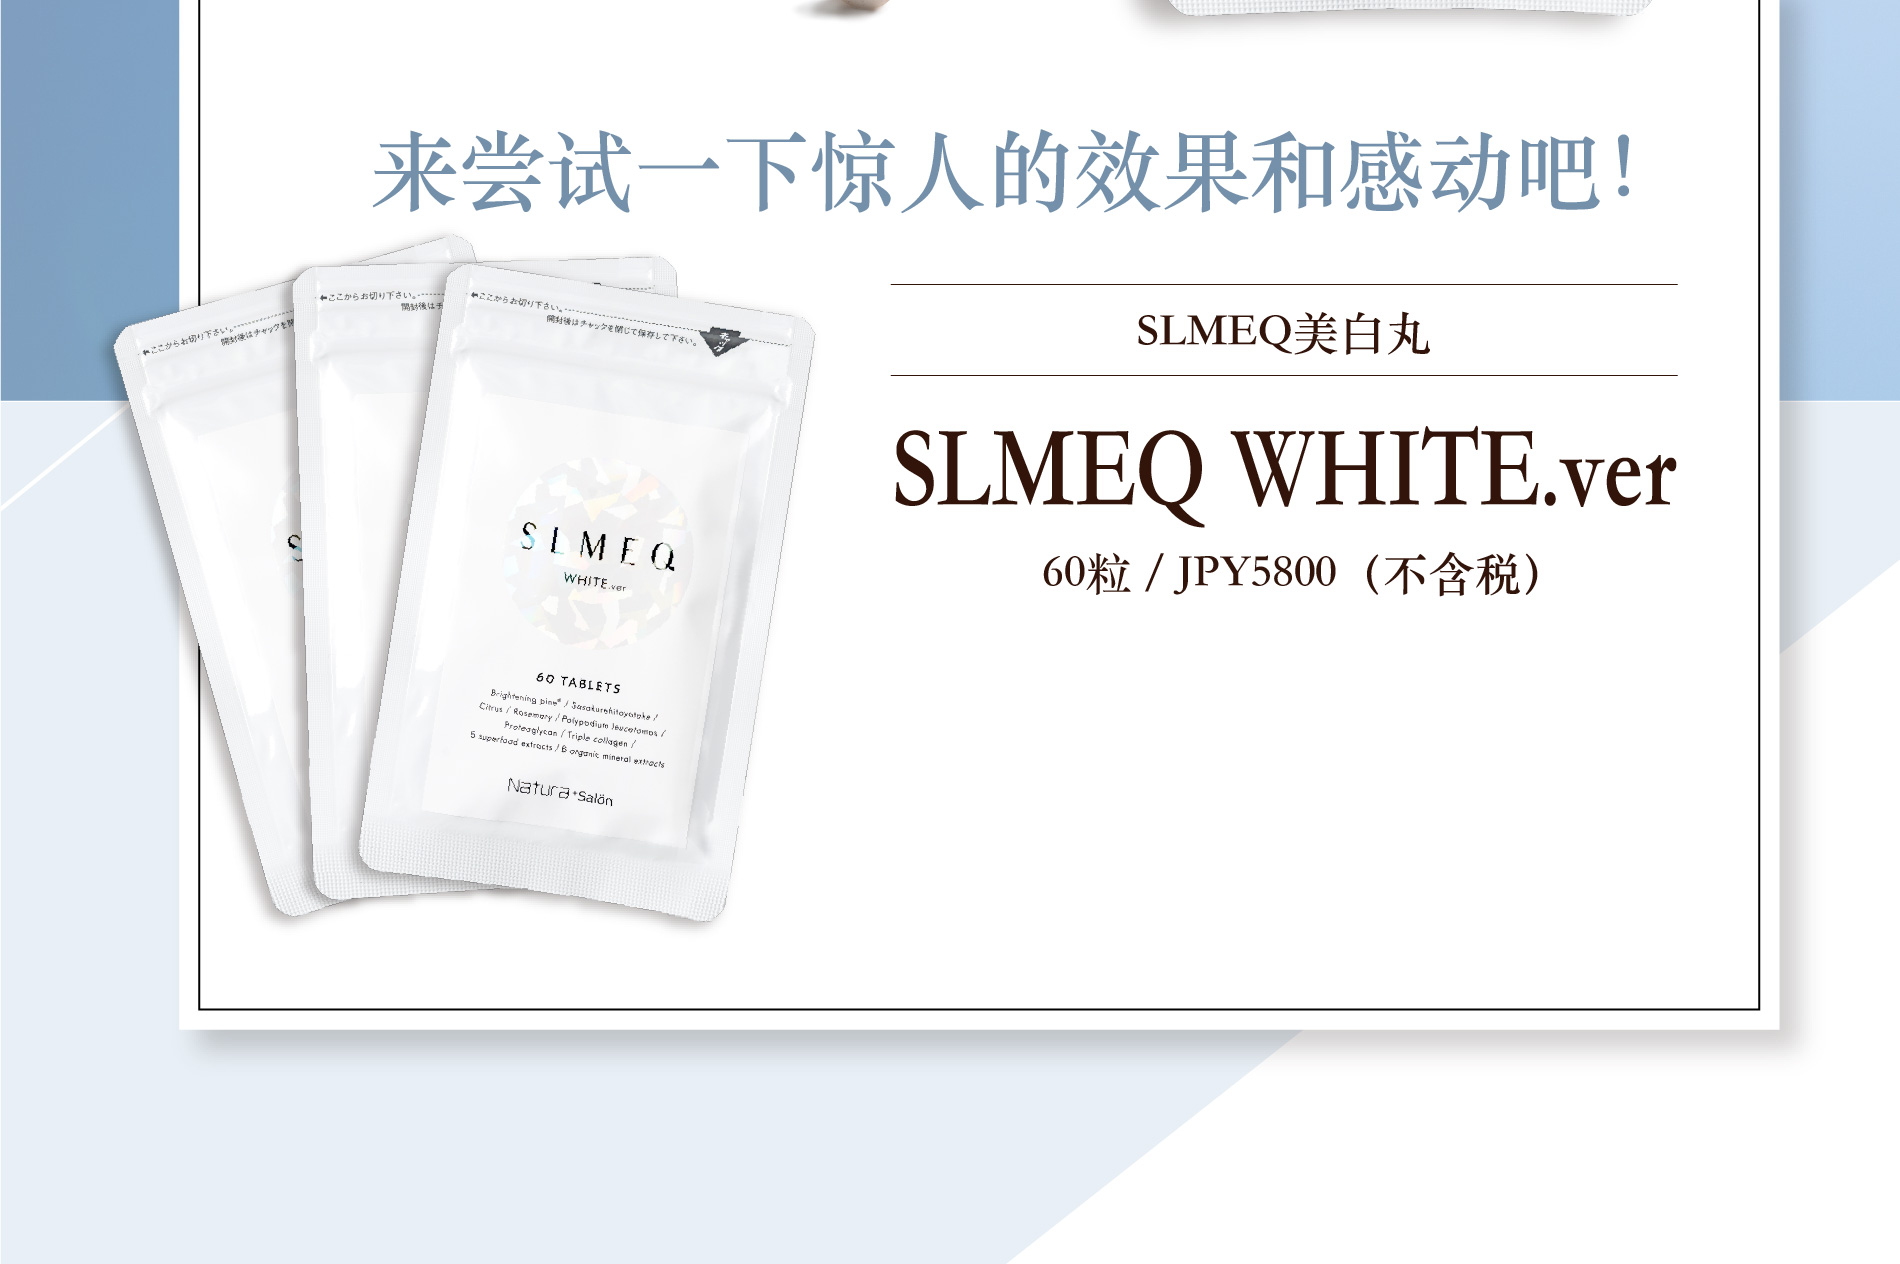 さあ、感動の実感をお試しください！ スリミークホワイト SLMEQ WHITE.ver 60TABLETS/5800円（税抜）